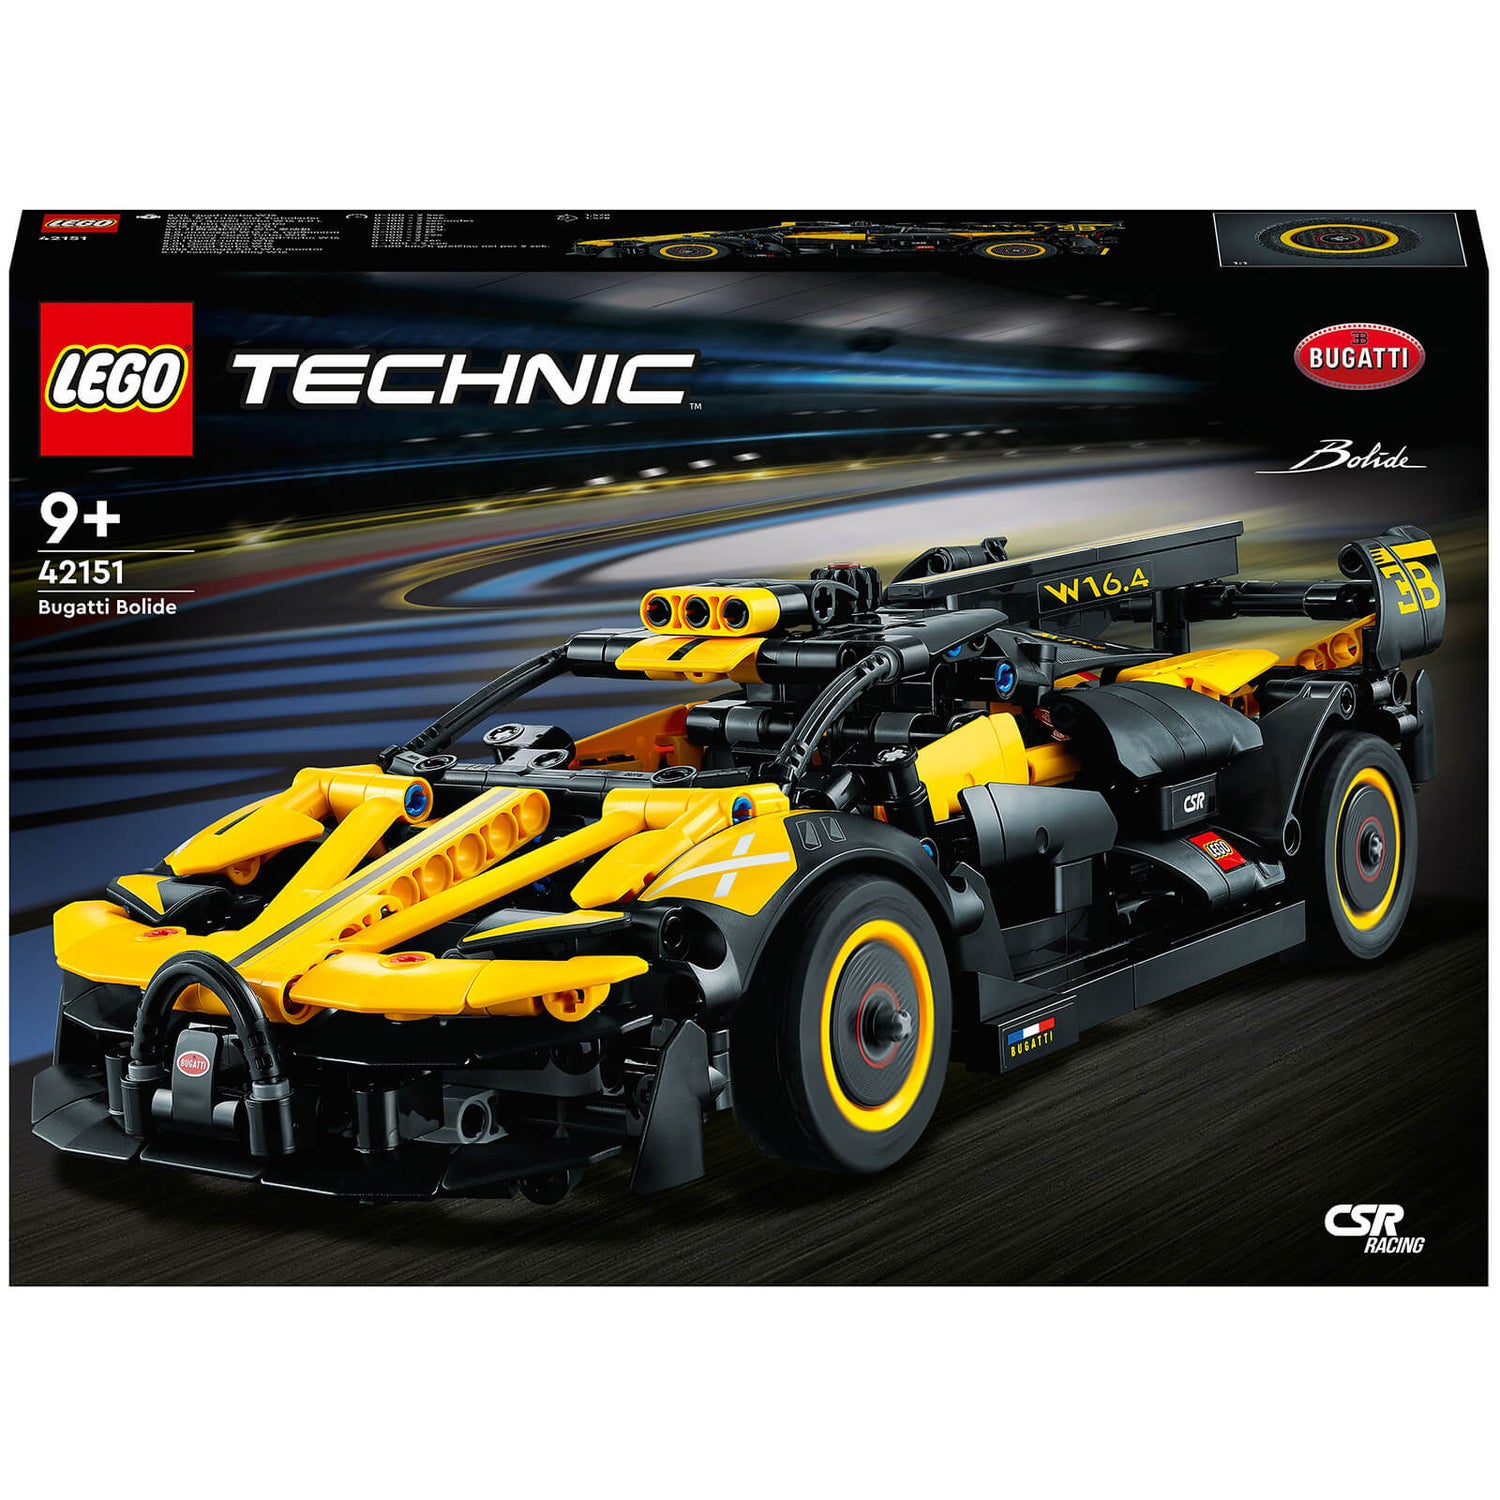 LEGO Technic: Bugatti Bolide Model Car Toy Building Set (42151)